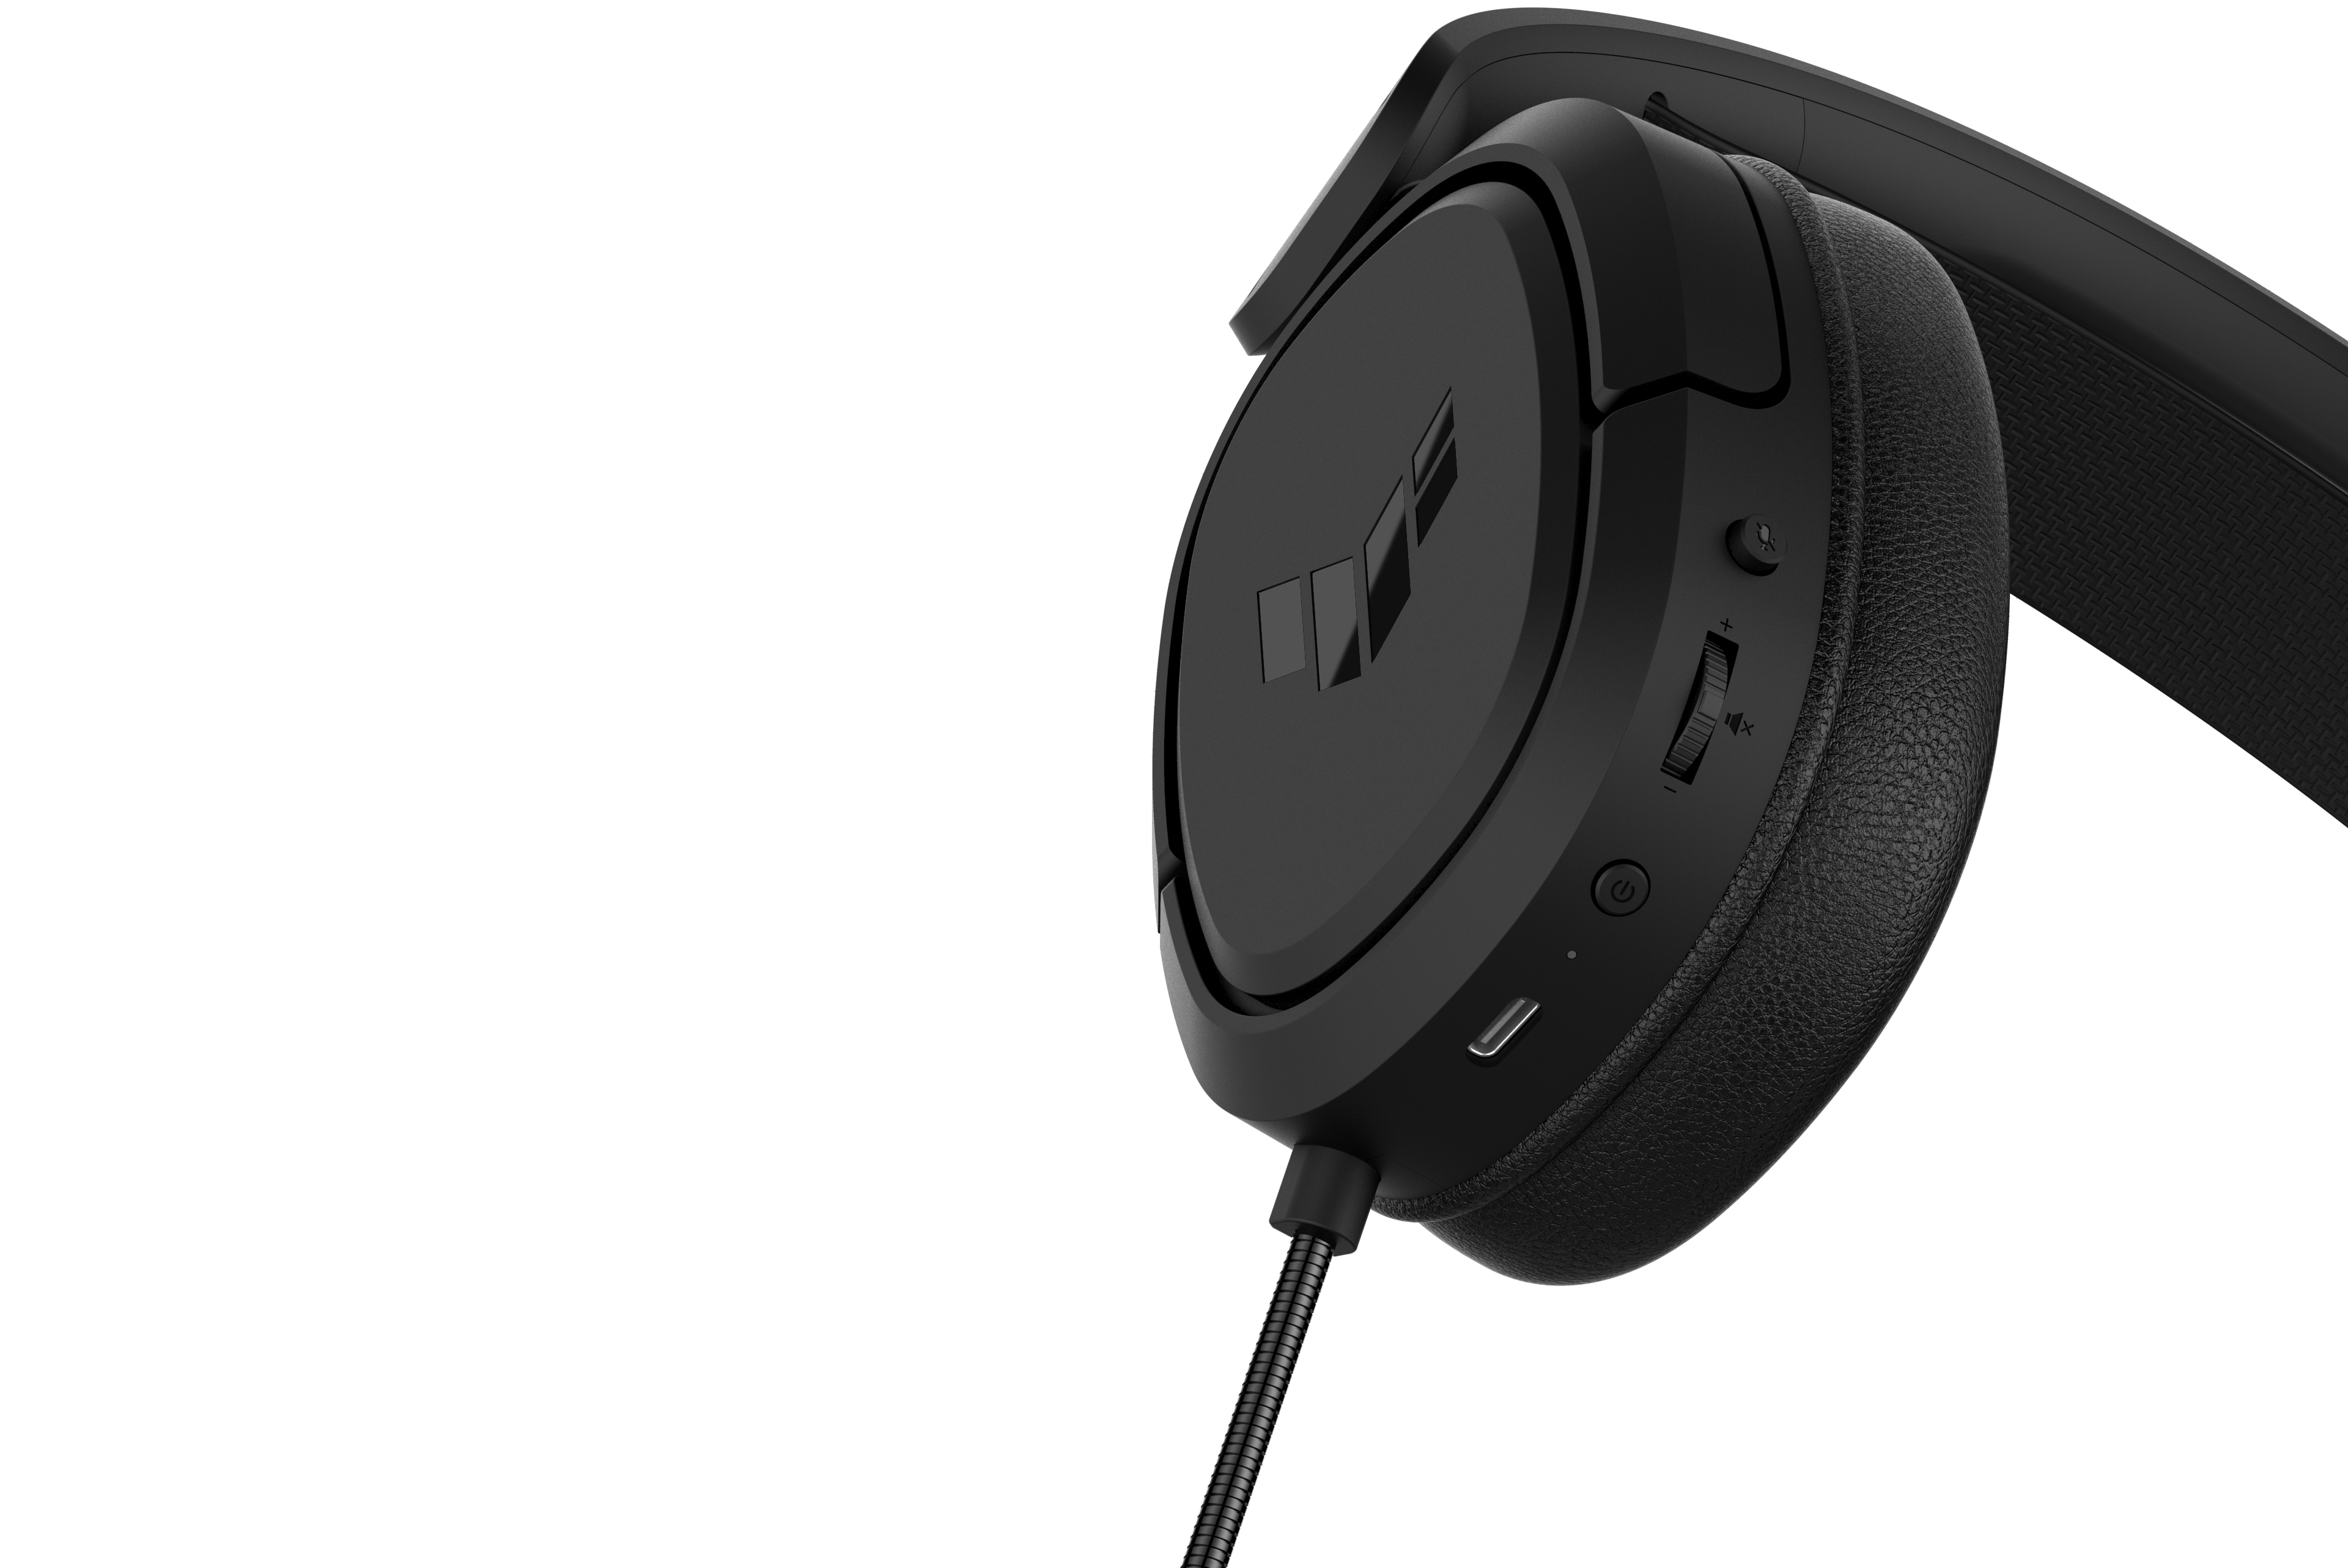 ASUS TUF Gaming H1 Wireless Kopfhörer Kabellos Kopfband USB Typ-C Schwarz